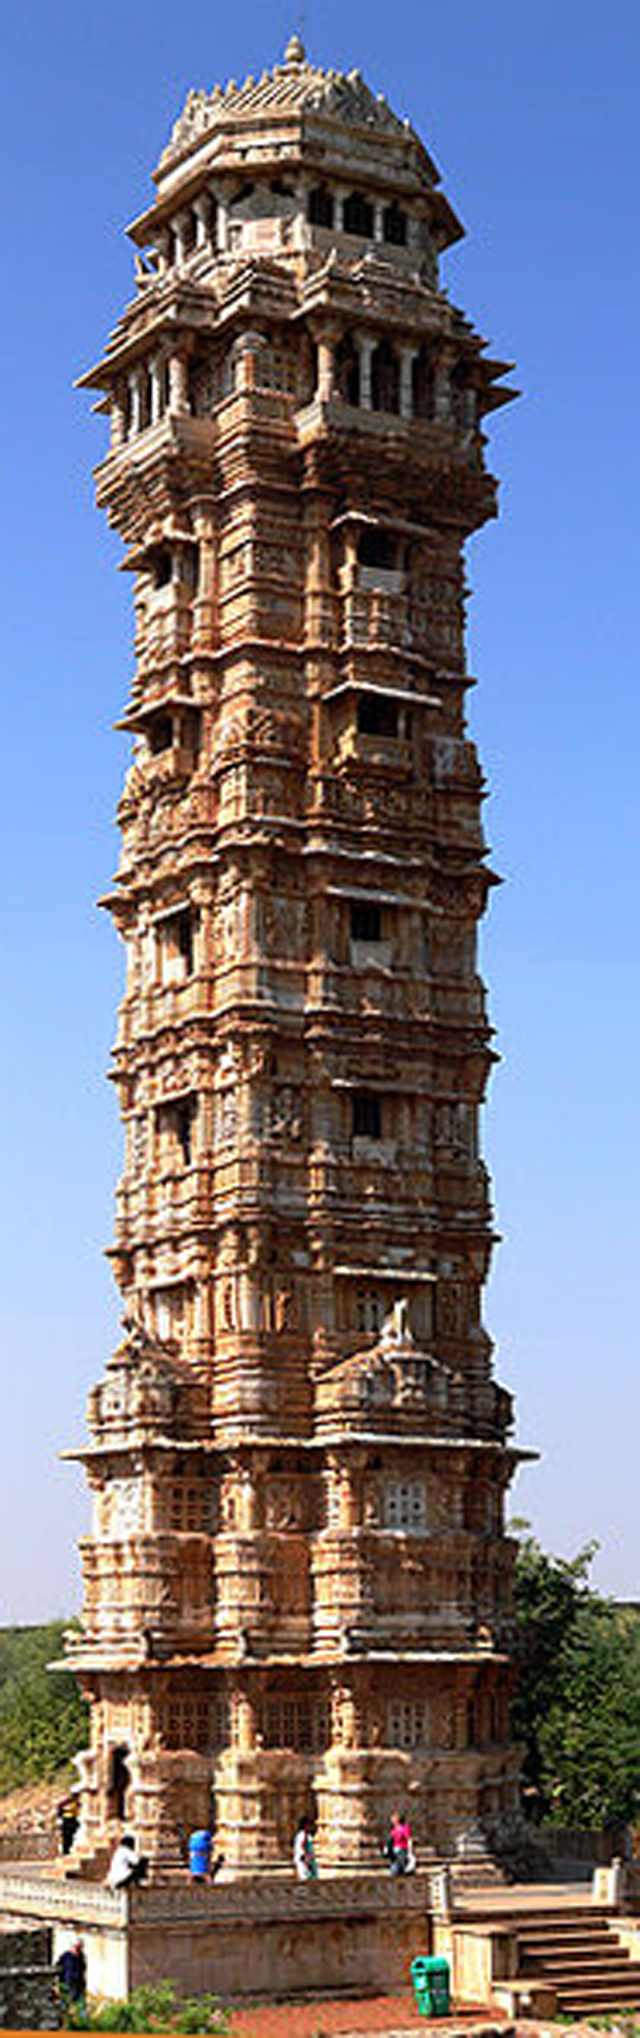 http://oediku.files.wordpress.com/2010/01/kemenangan-tower-chittogarh-india-fix.jpg